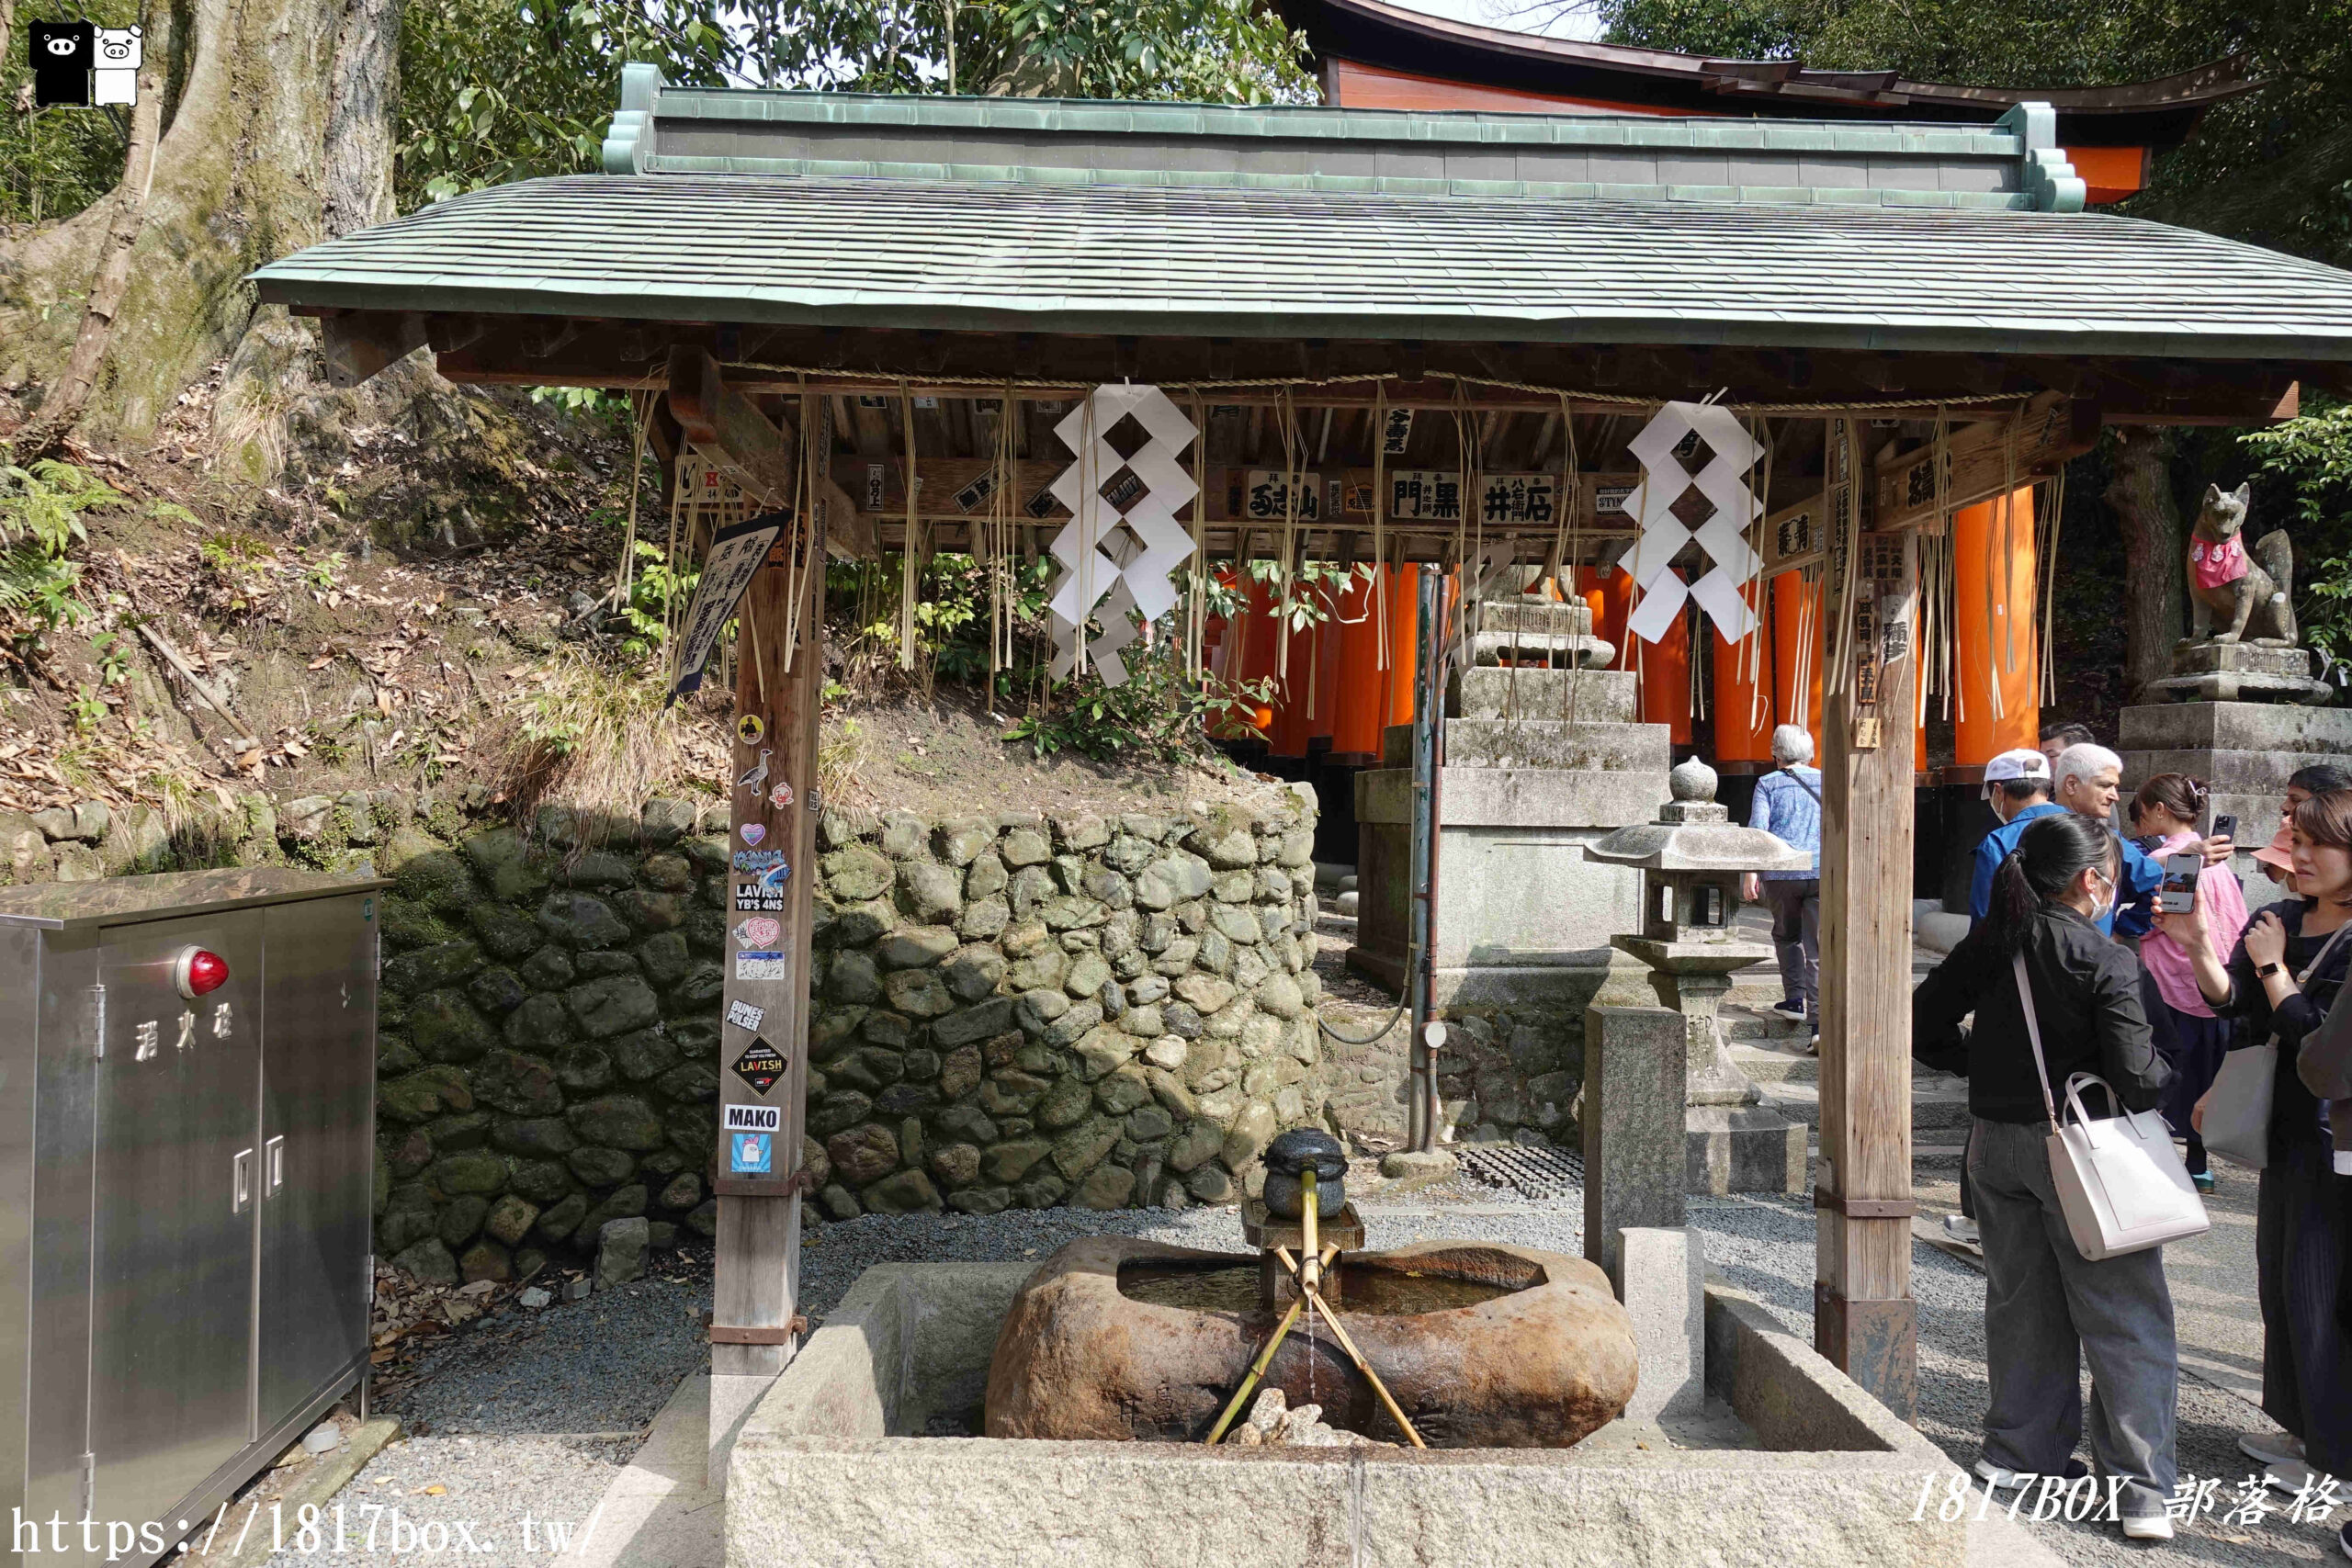 【京都景點】伏見稻荷大社。壯觀的千本鳥居。神秘的日本狐狸雕像